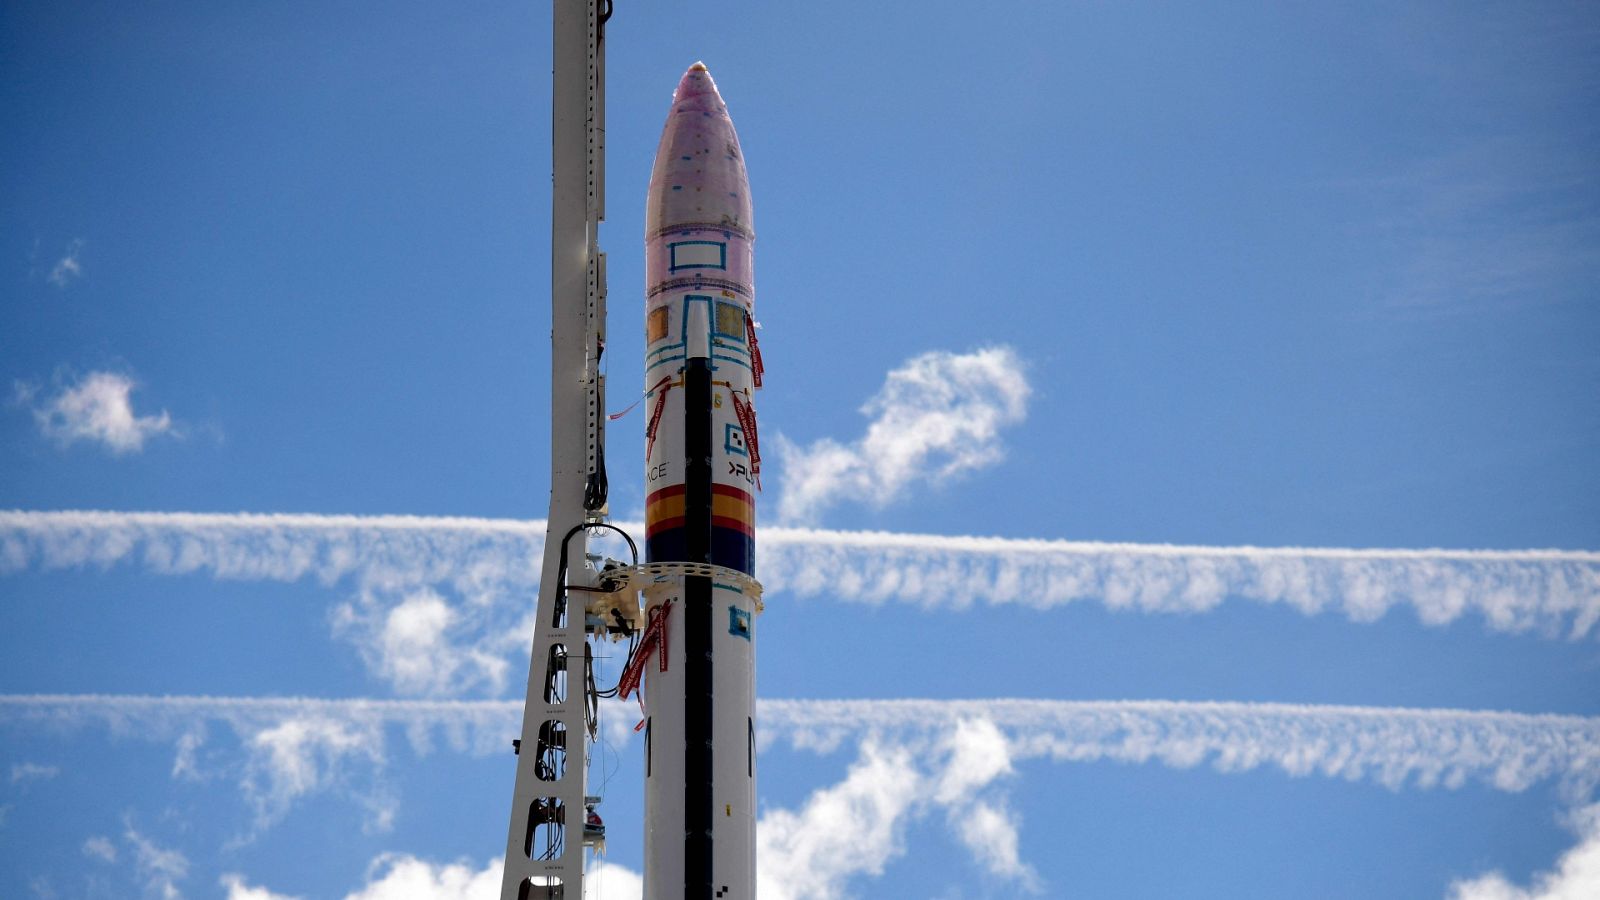 El cohete español Miura 1 se lanzará en primavera